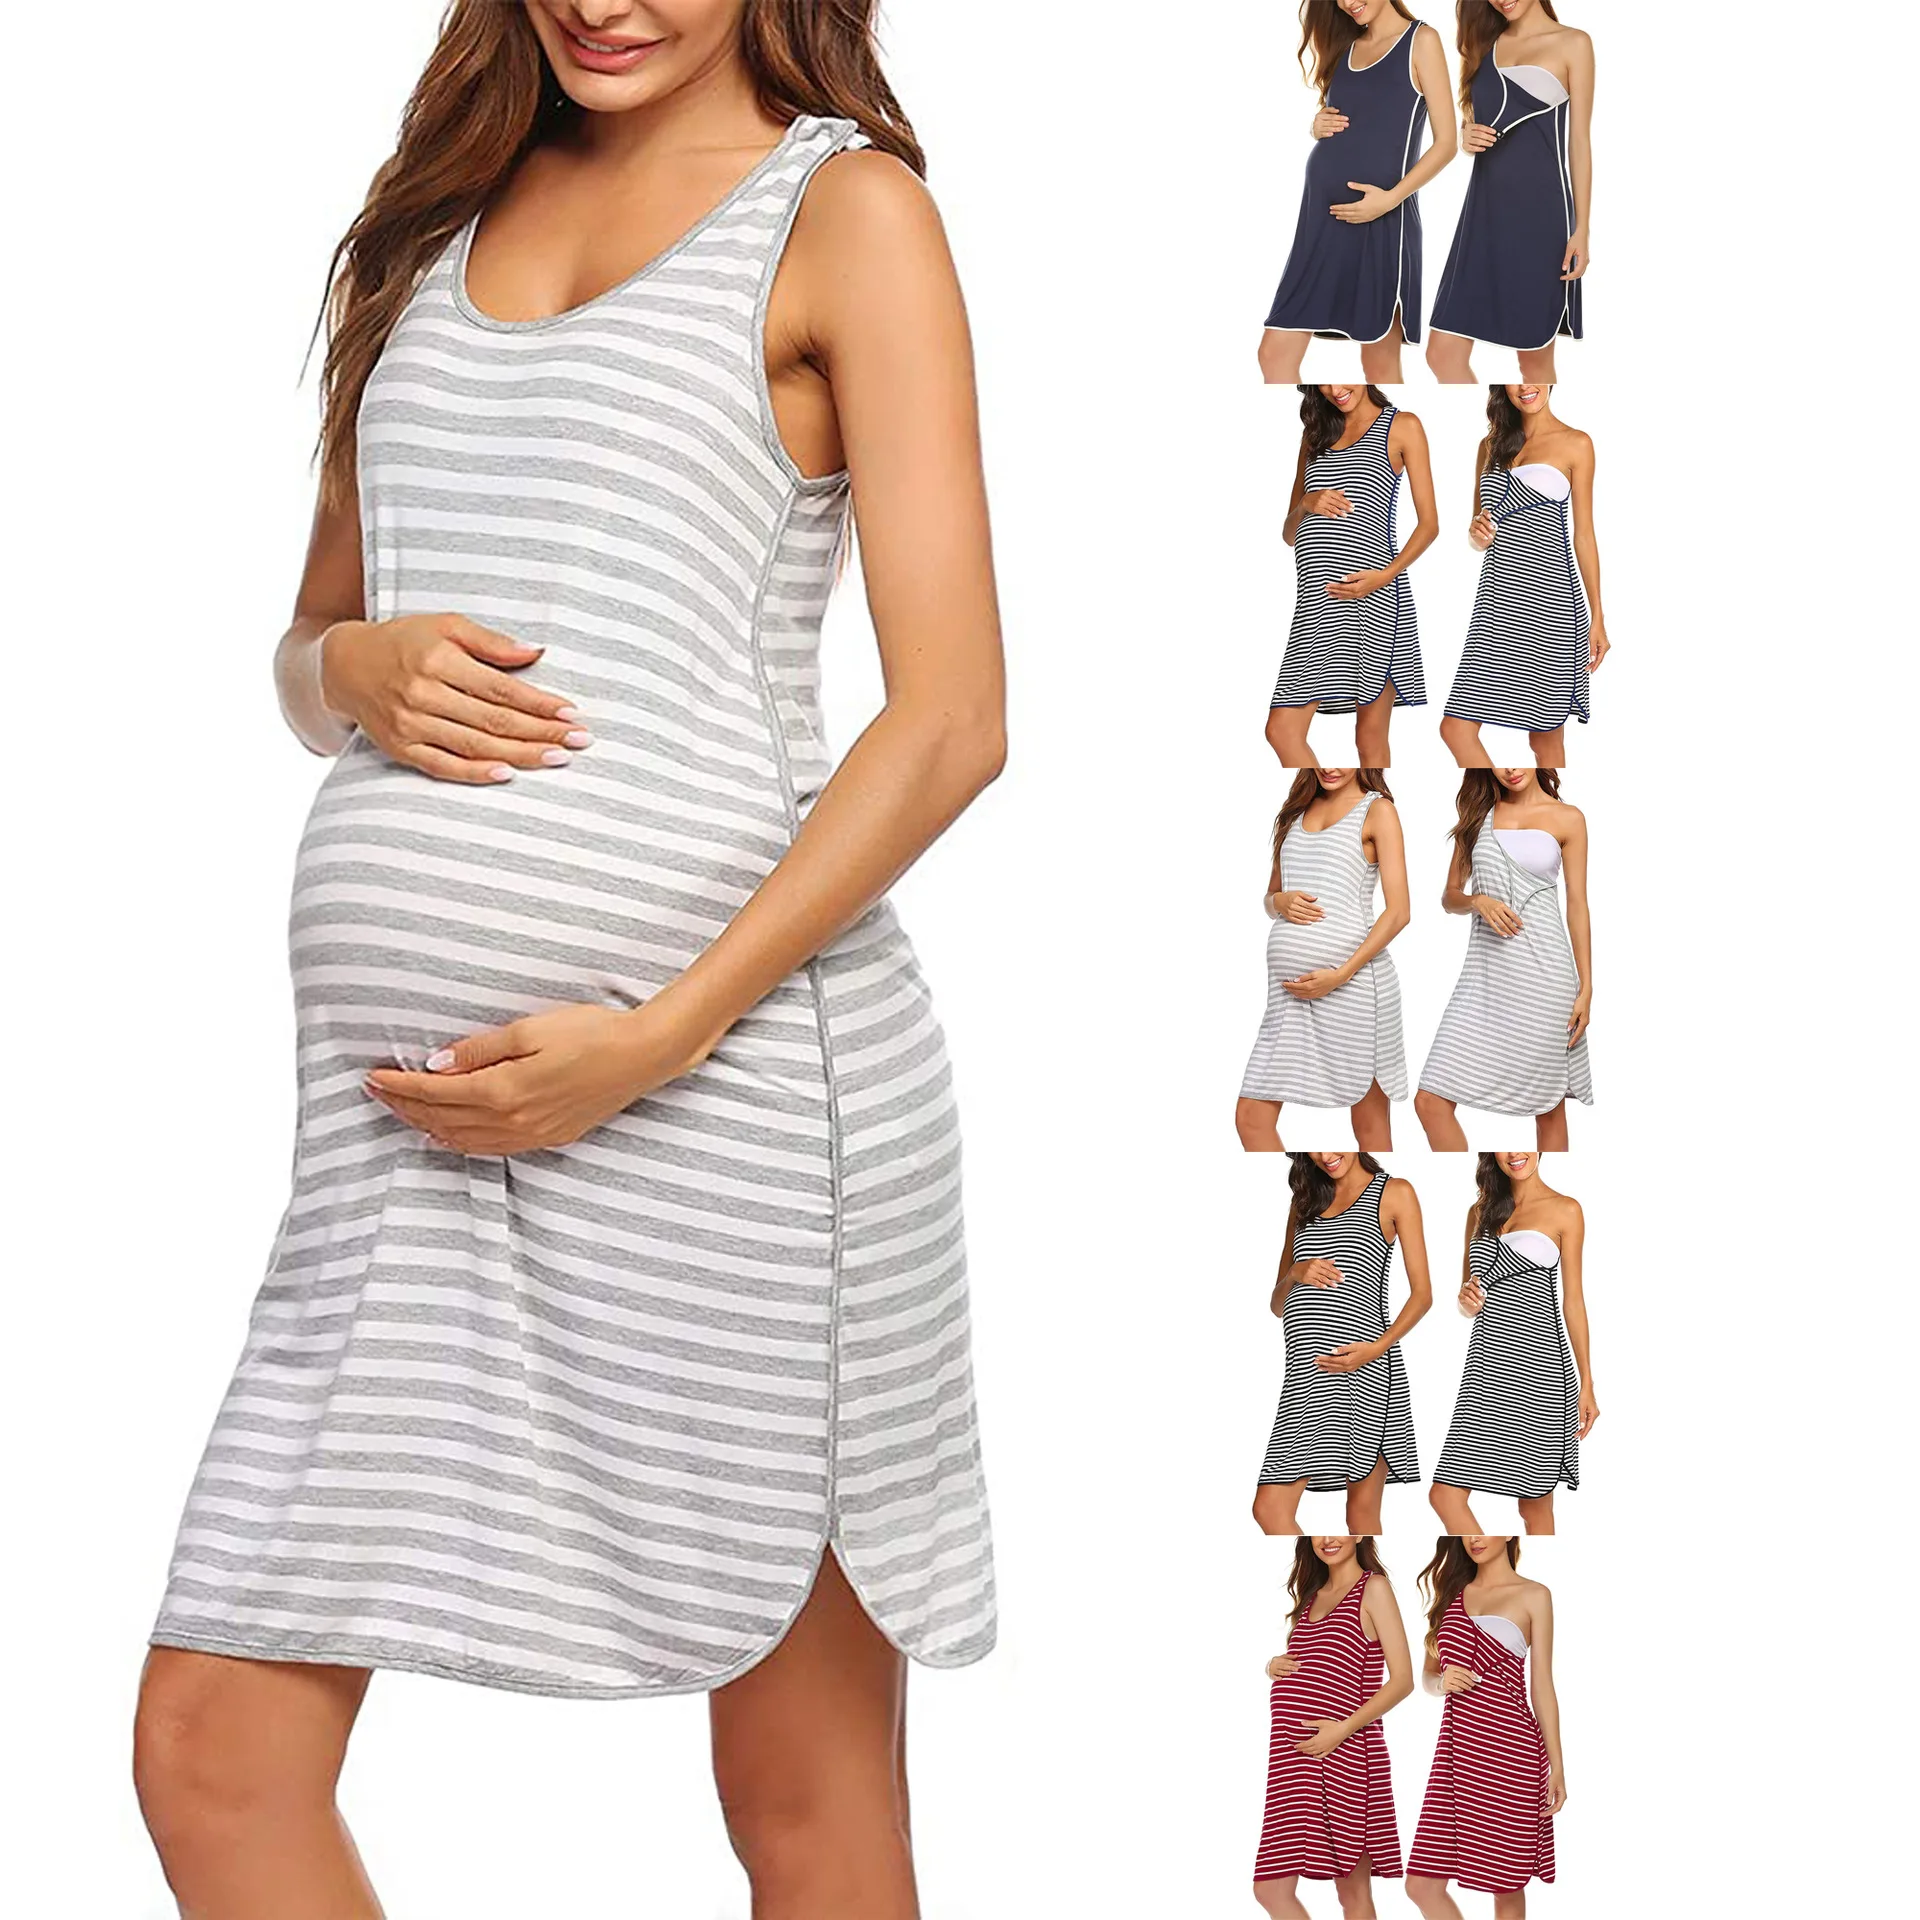 

New Maternity Dresses Summer Striped Sleeveless Nursing Pleat Breastfeeding Dress Pregnancy Dresses For Pregnant Women